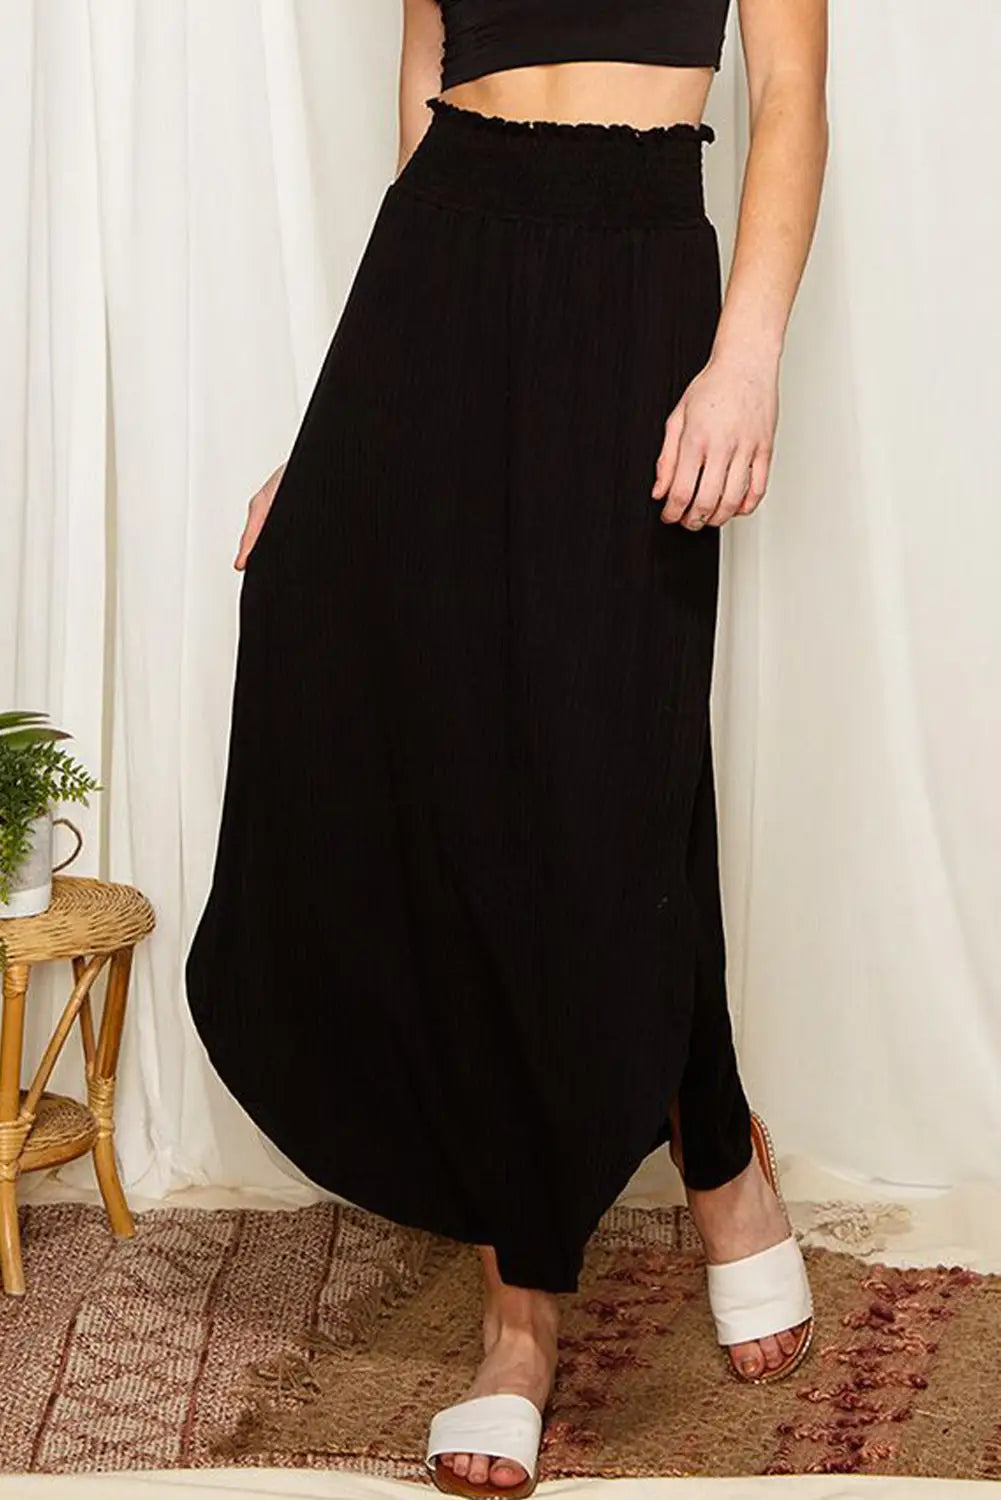 Black smocked high waist maxi skirt with slit - s / 95% polyester + 5% elastane - skirts